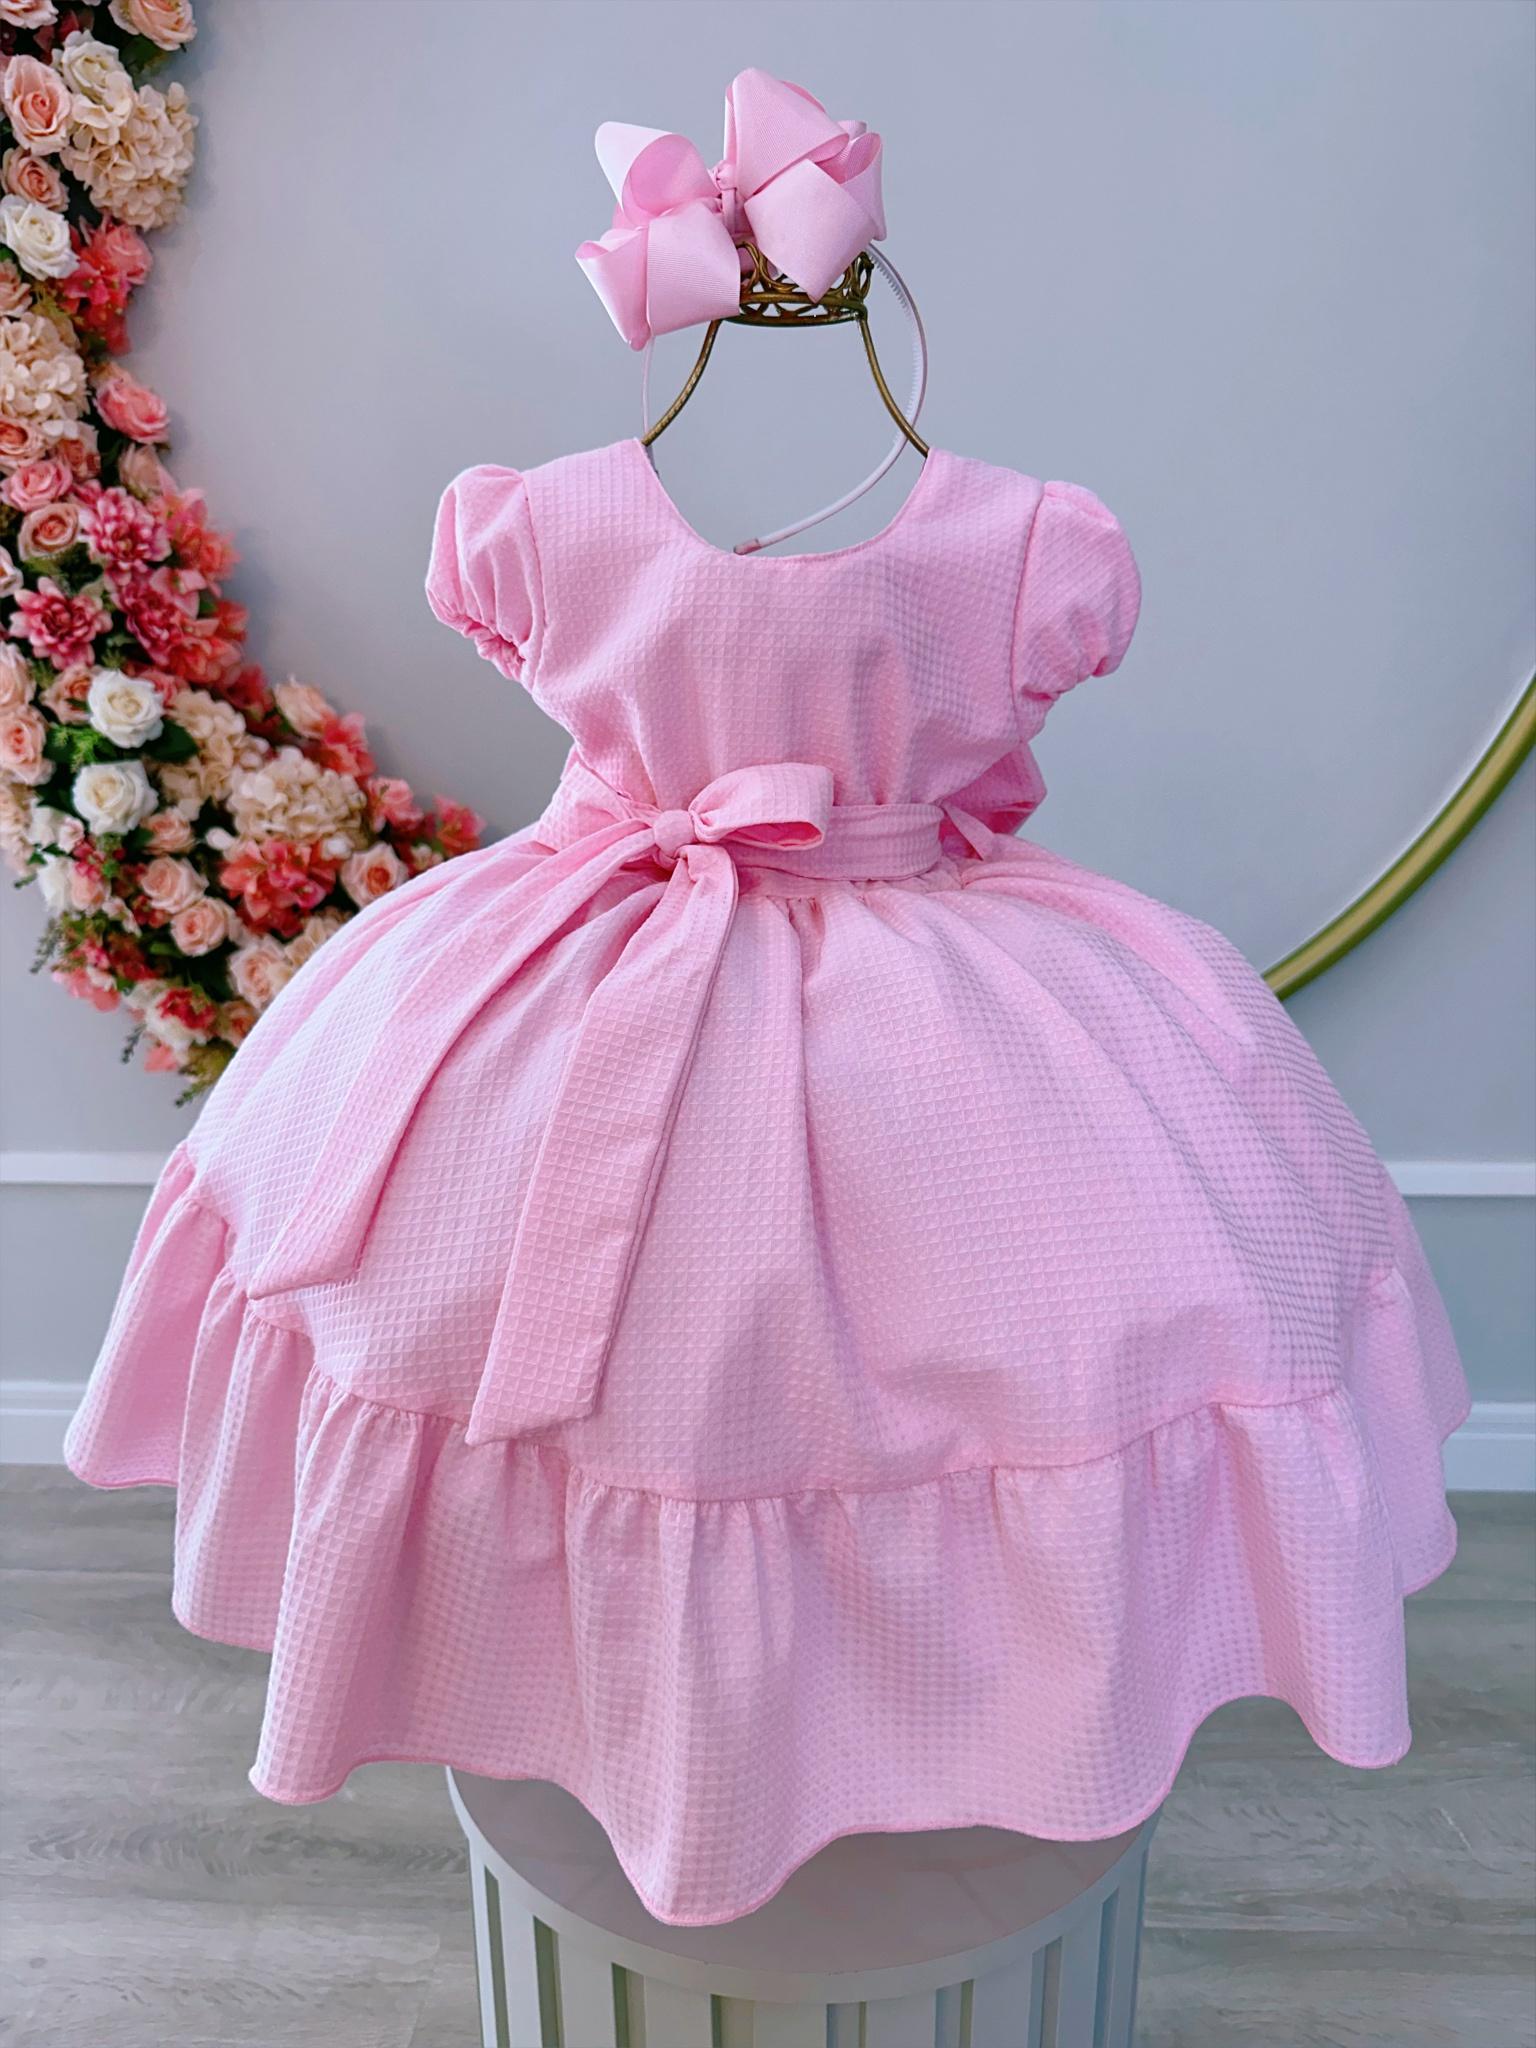 Vestido Infantil Rosa Bebê Maquinetado Luxo Damas